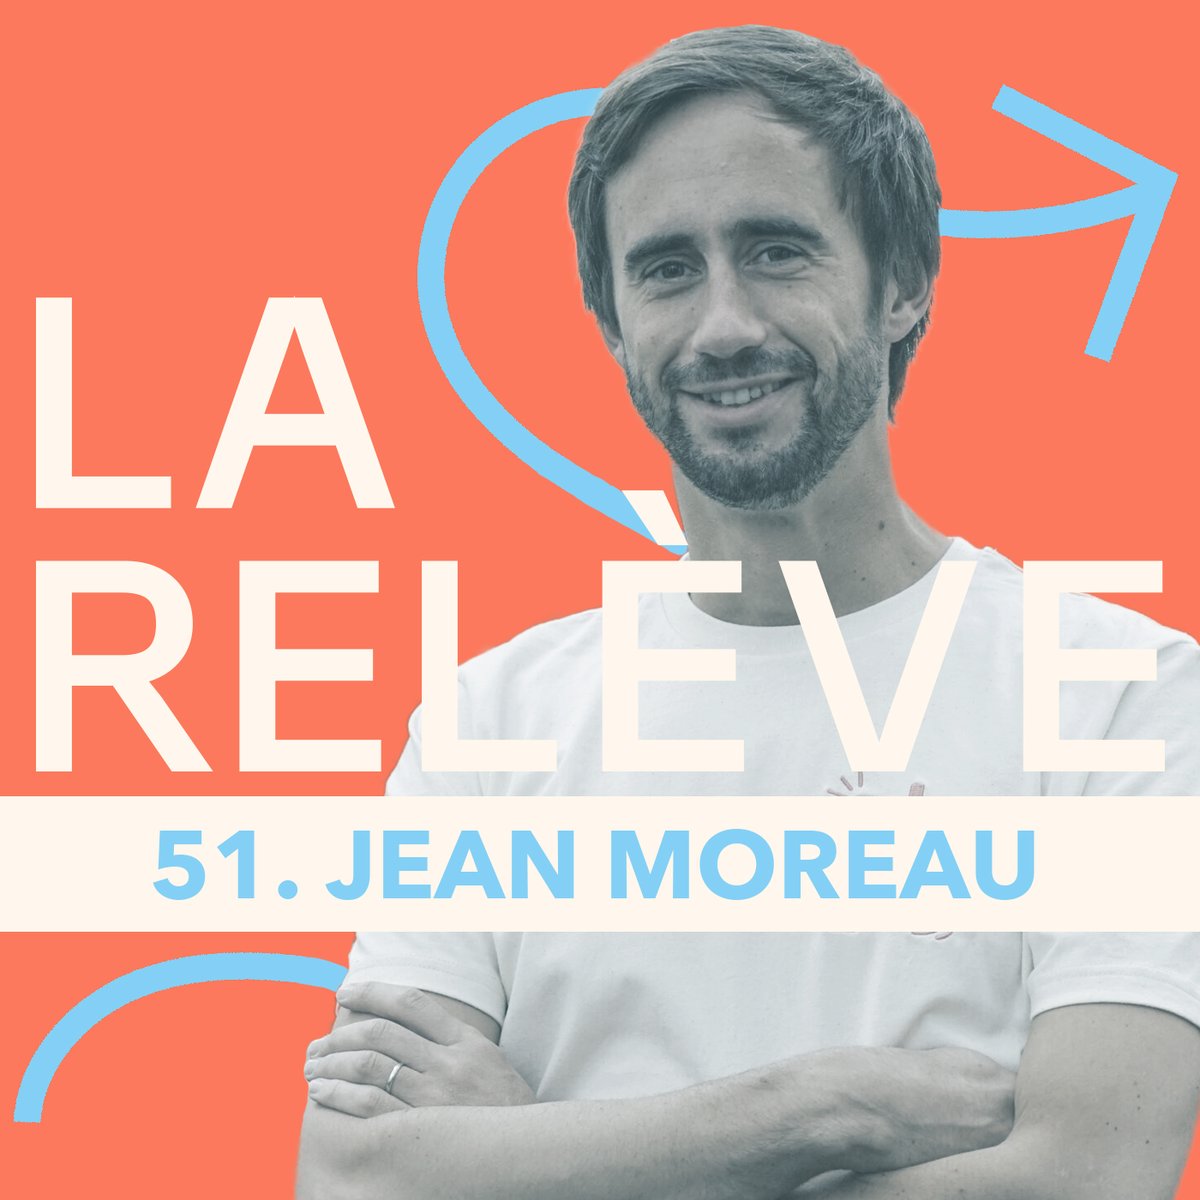 🎙Pour le nouvel épisode du podcast 'La Relève', @thiblam reçoit @Jean_MOREAU_, cofondateur de @phenixfr ! 👉 Lien du #podcast : audmns.com/alMEwxn #Antigaspi